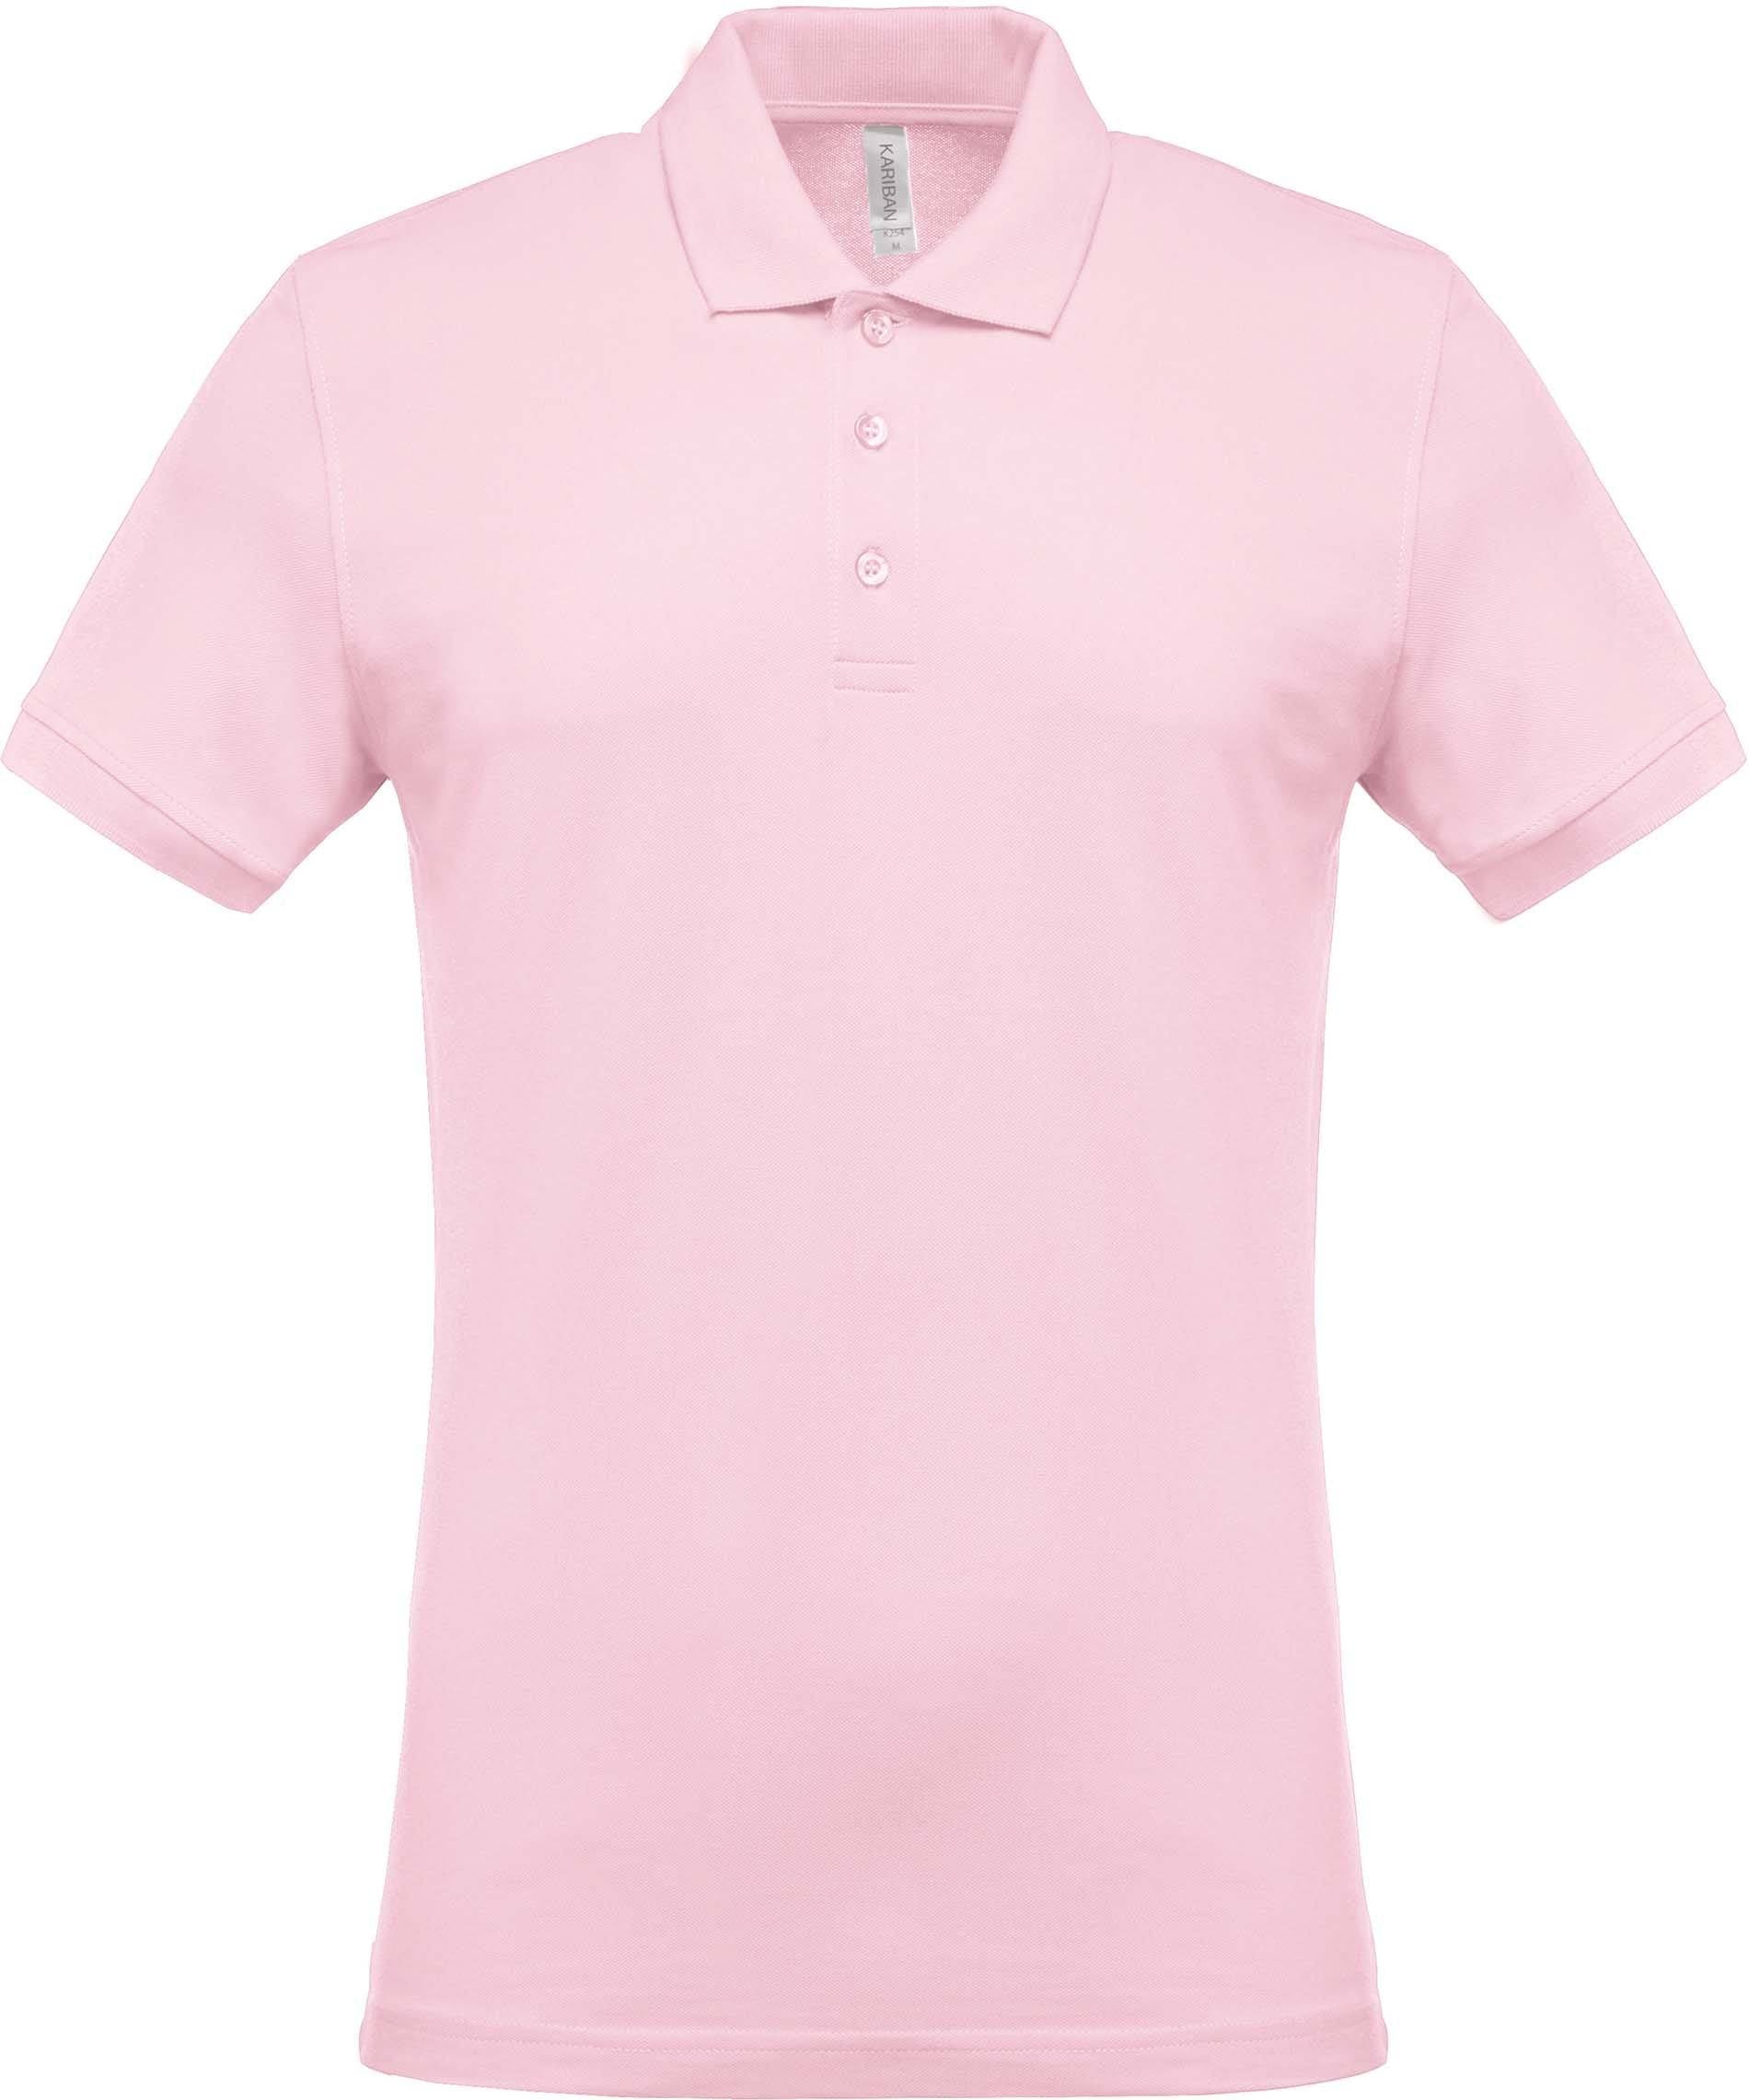 Polo personnalisé piqué manches courtes golf team - K254 couleurs originales polo homme Kariban pale pink S 